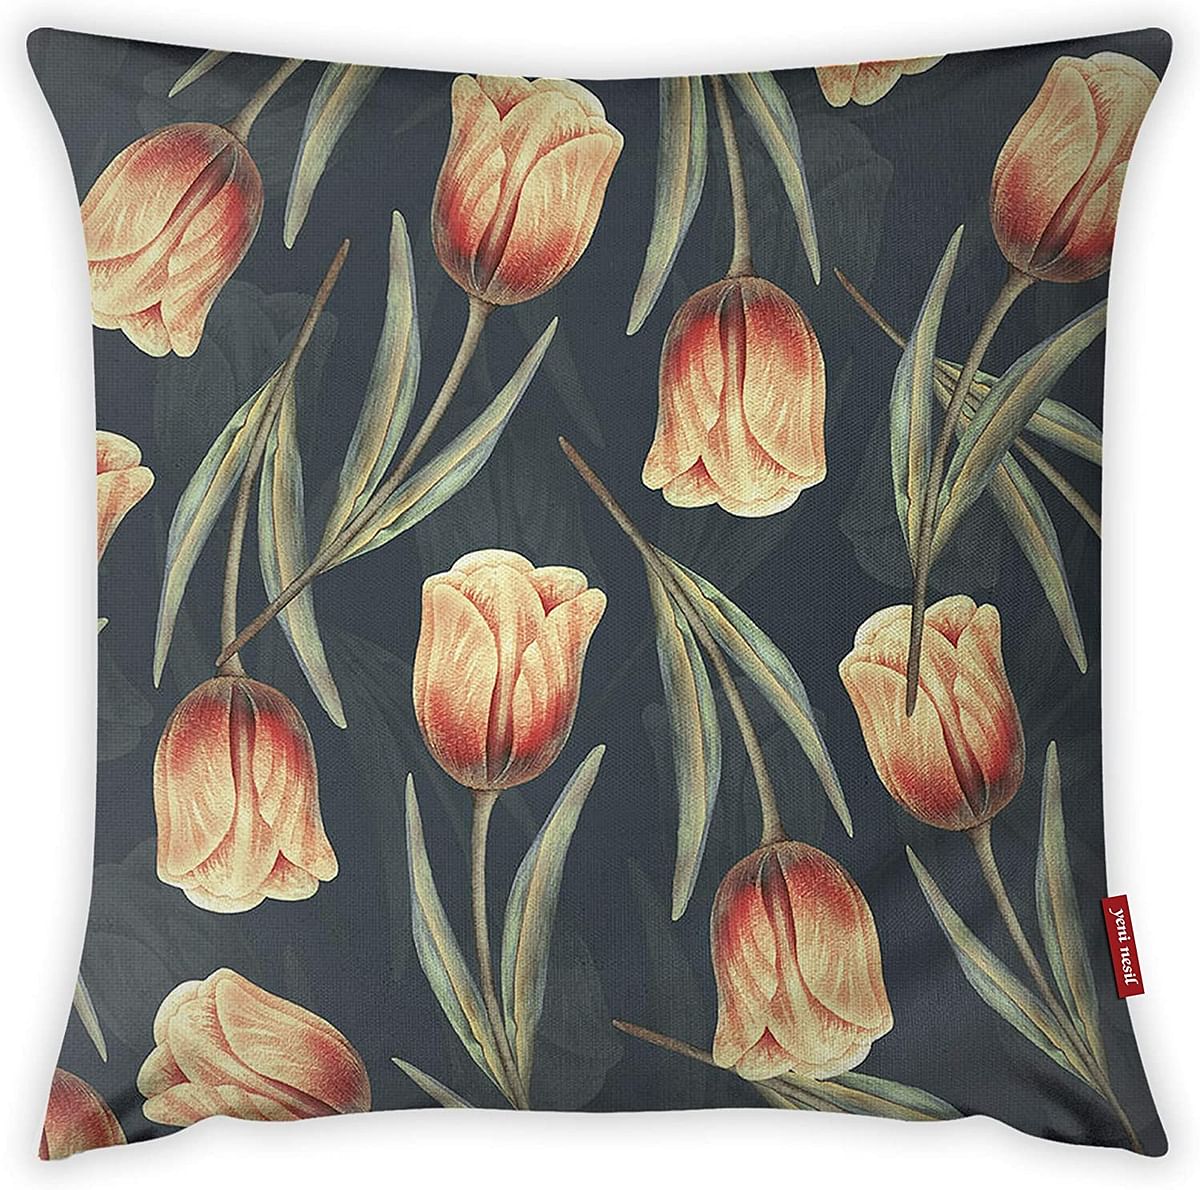 Mon Desire Decorative Throw Pillow Cover, Multi-Colour, 44 x 44 cm, MDSYST4458